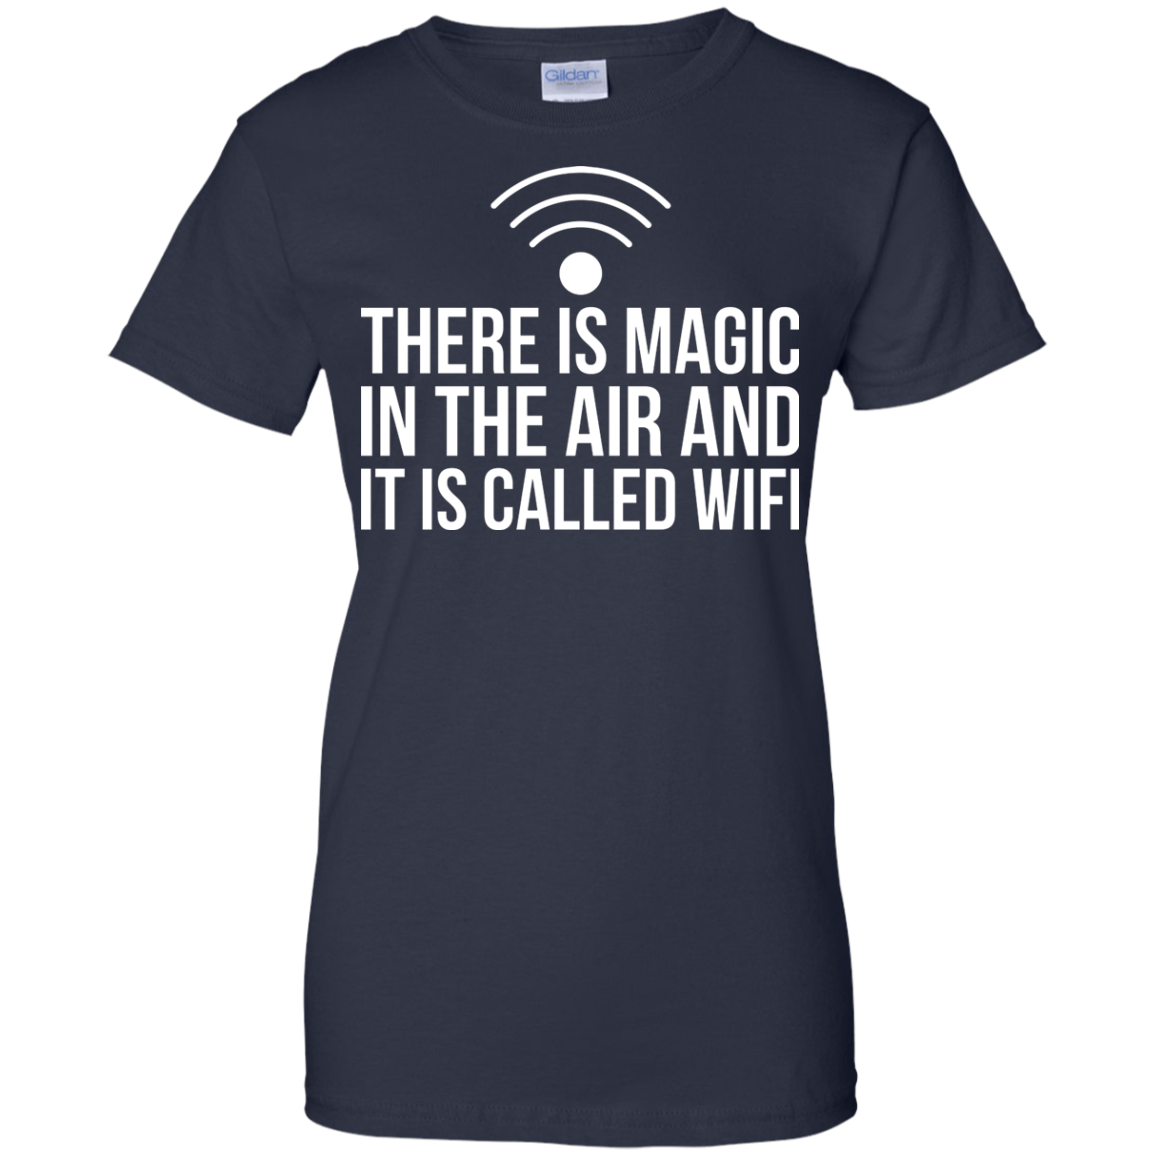 Hay magia en el aire y se llama WiFi